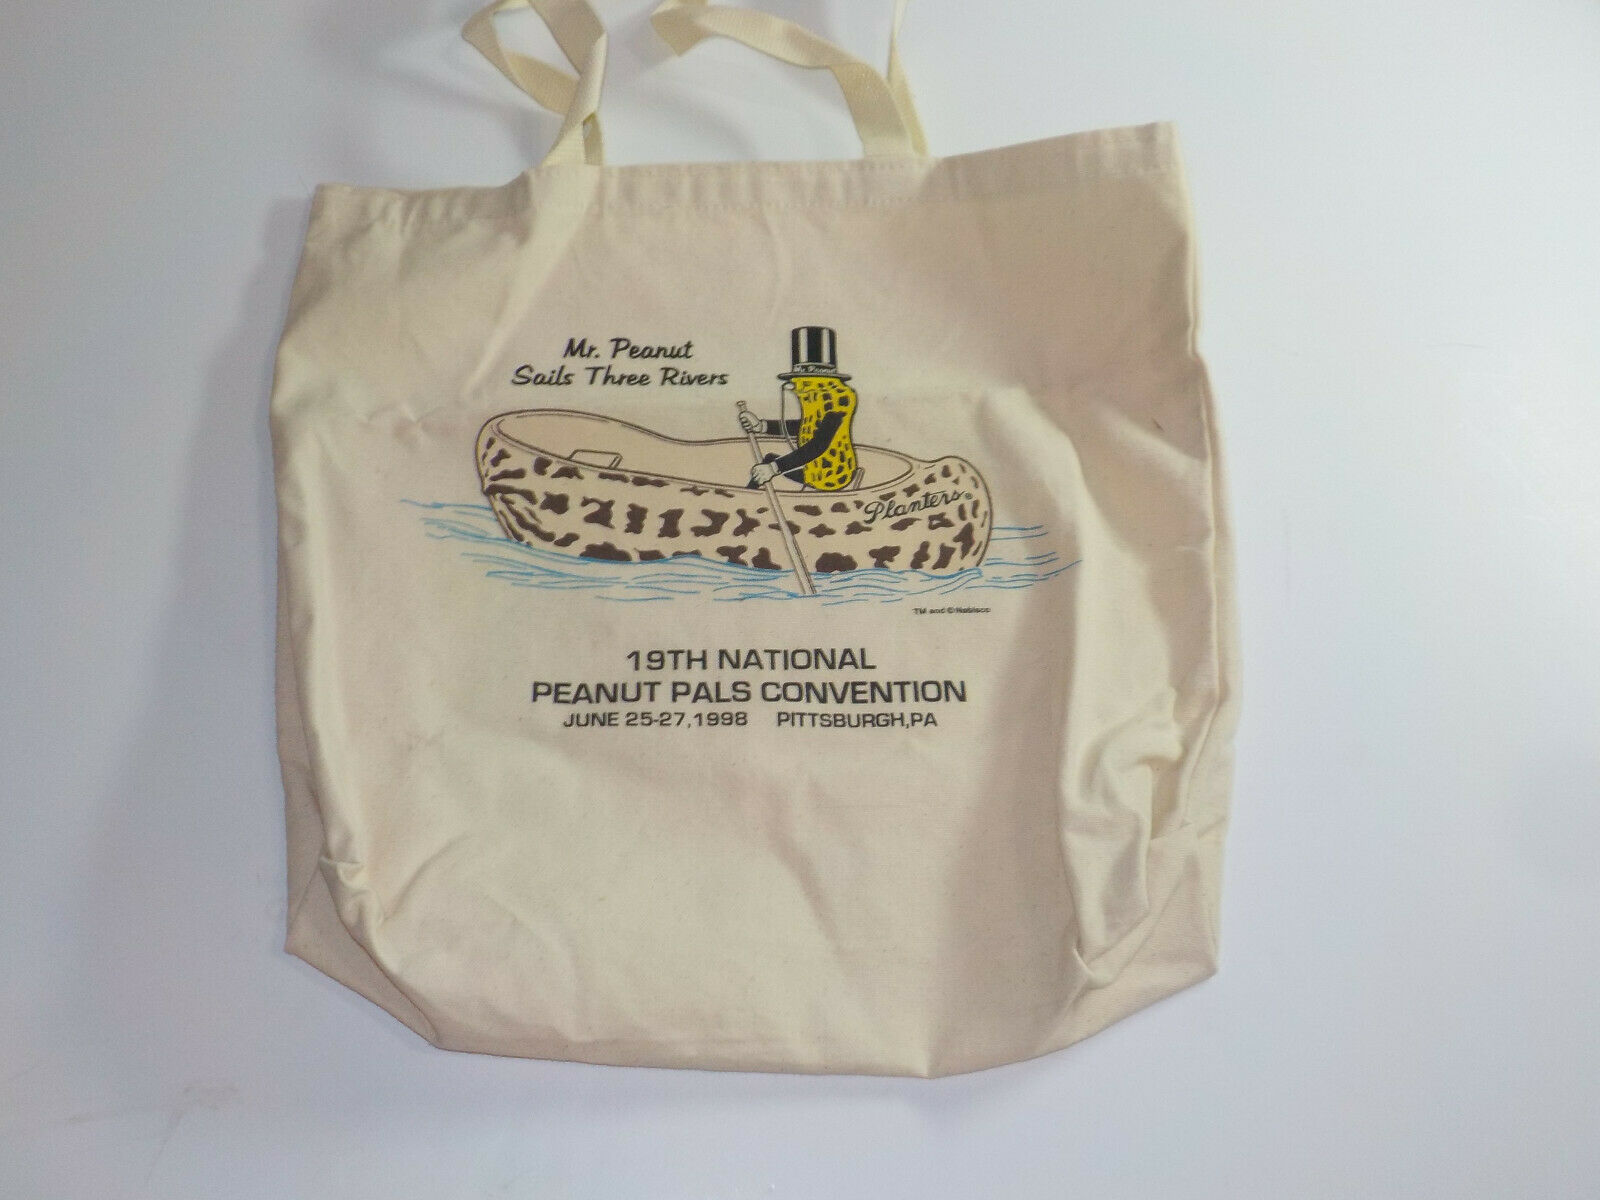 Vintage 1998 Peanut Pals Convention Tote Bag Mr Peanut Sails Three Rivers Canoe